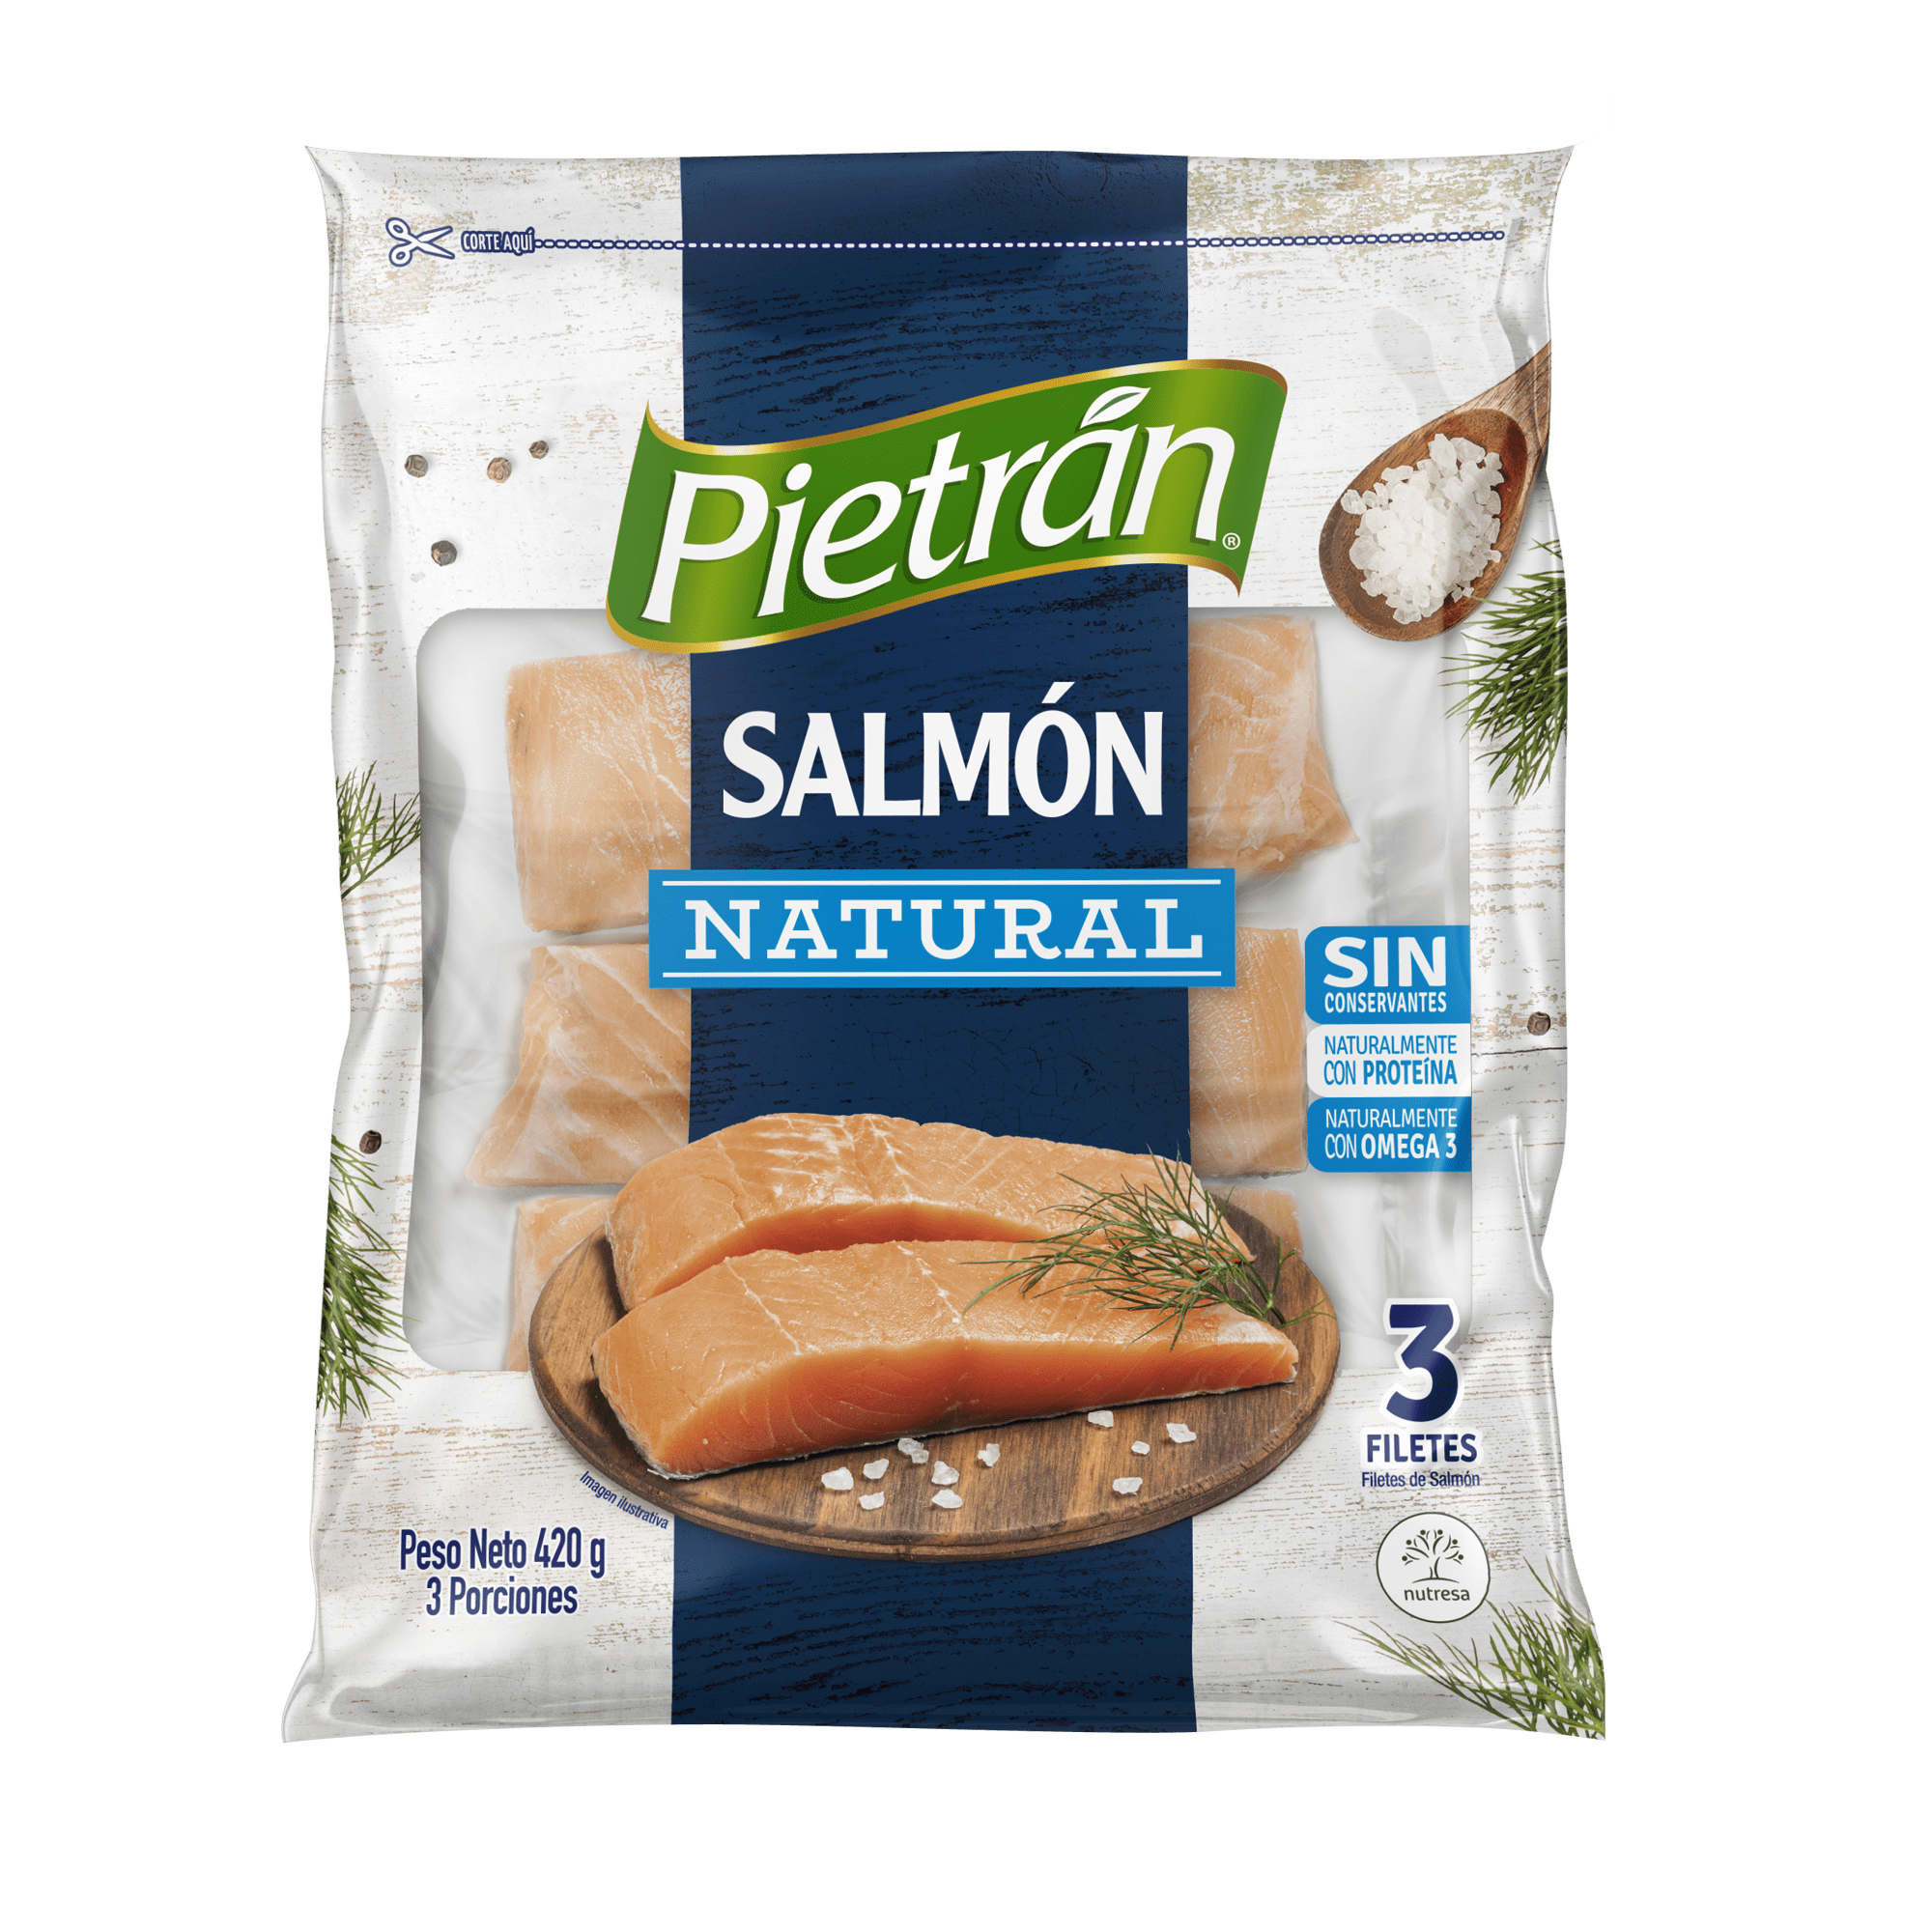 Salmon Pietran Natural 3